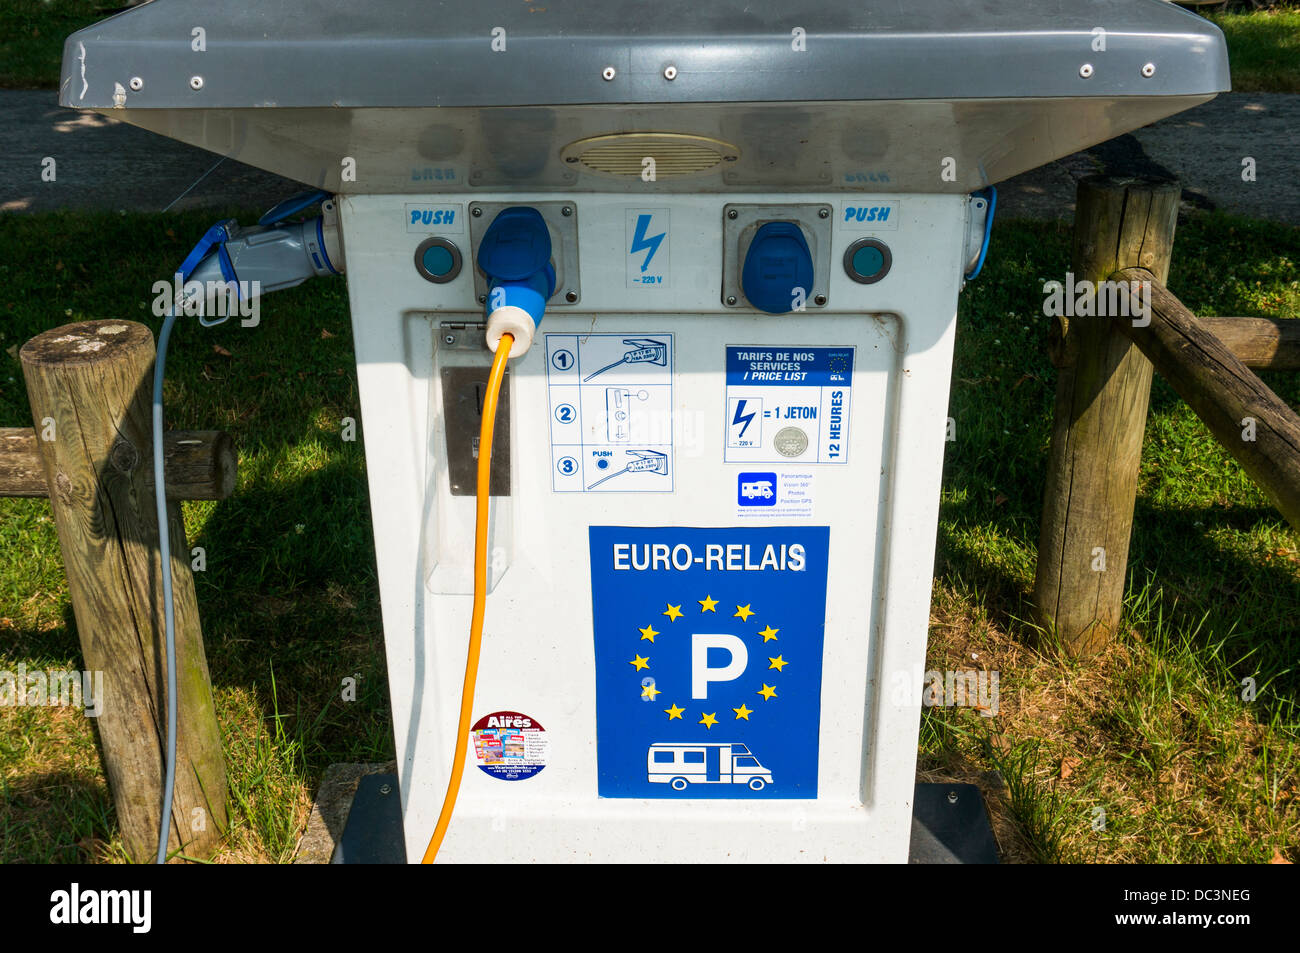 Une offre d'électricité à base de jetons - Euro Relais - pour camping-cars, sur l'aire-de-camping à Saint-Cyprien, en Dordogne, sud-ouest de la France. Banque D'Images